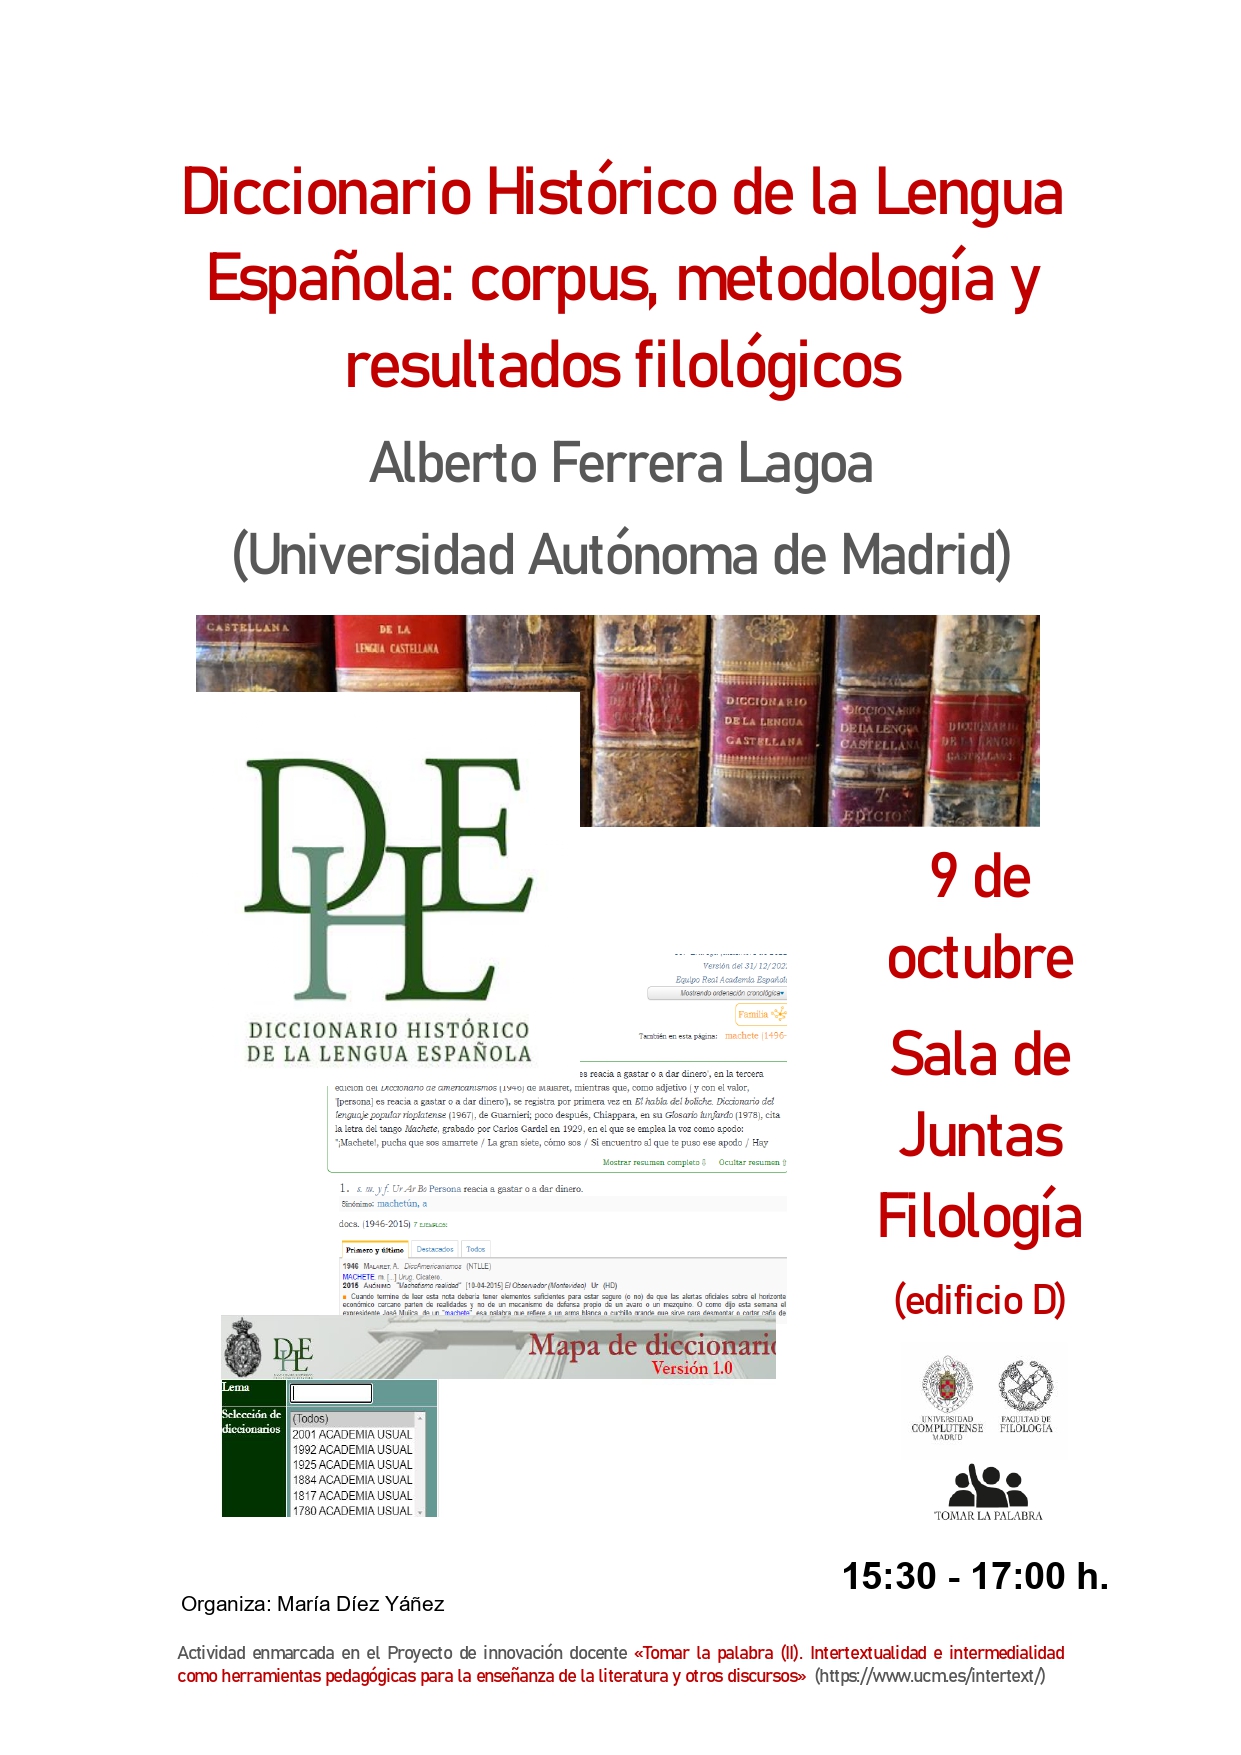 Conferencia de Alberto Ferrera Lagoa, "Diccionario Histórico de la Lengua Española: corpus, metodología y resultados filológicos"